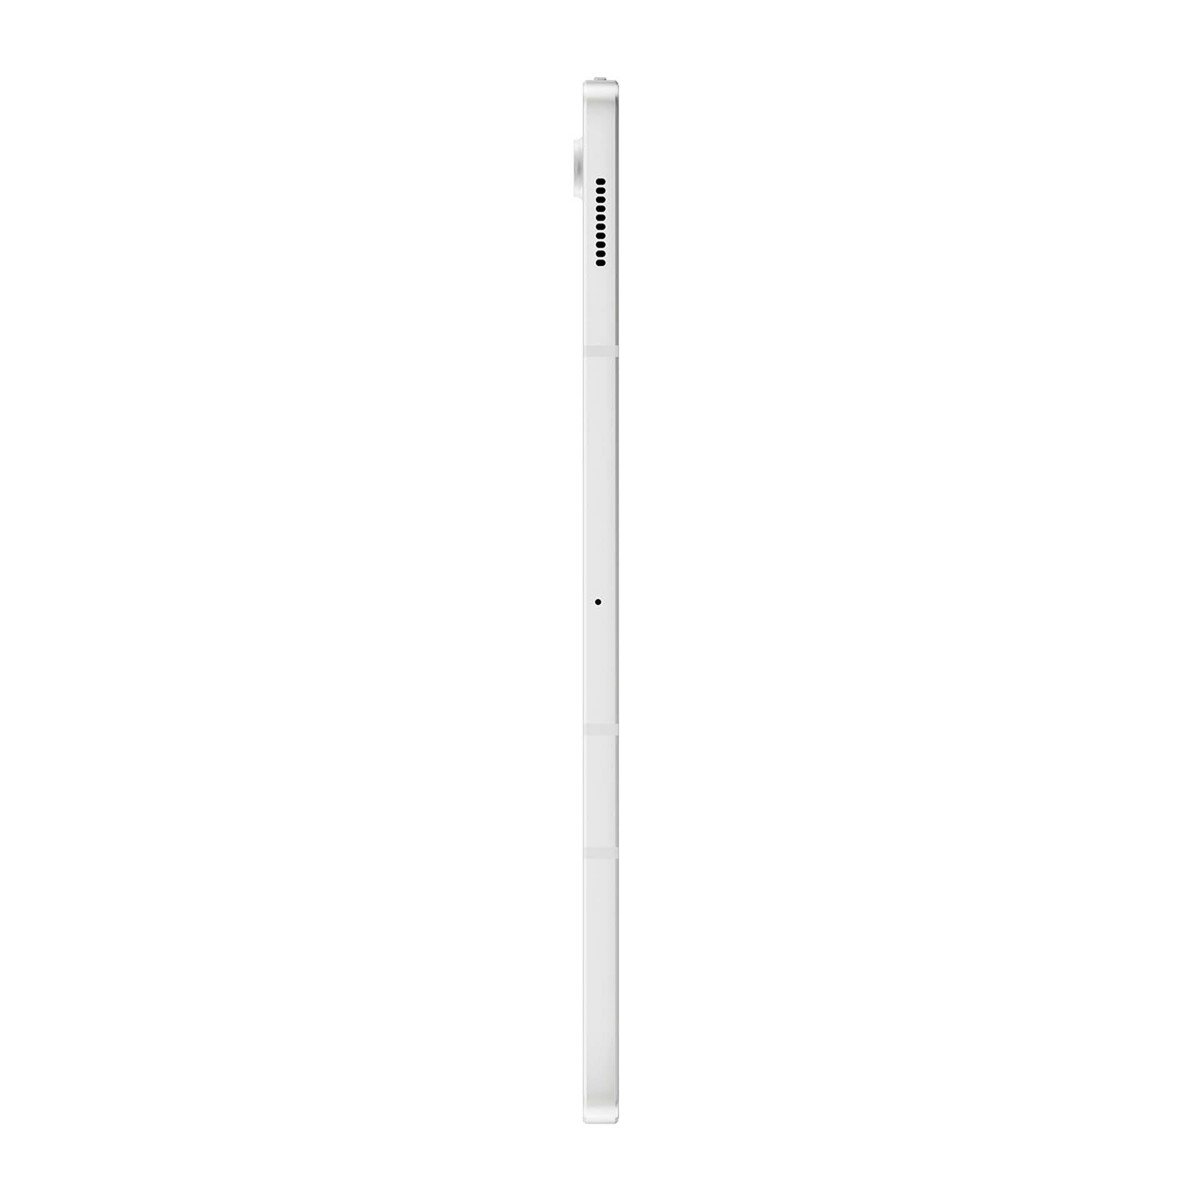 Samsung Galaxy Tab S7 FE T735 12.4inch 64GB LTE Mystic Silver